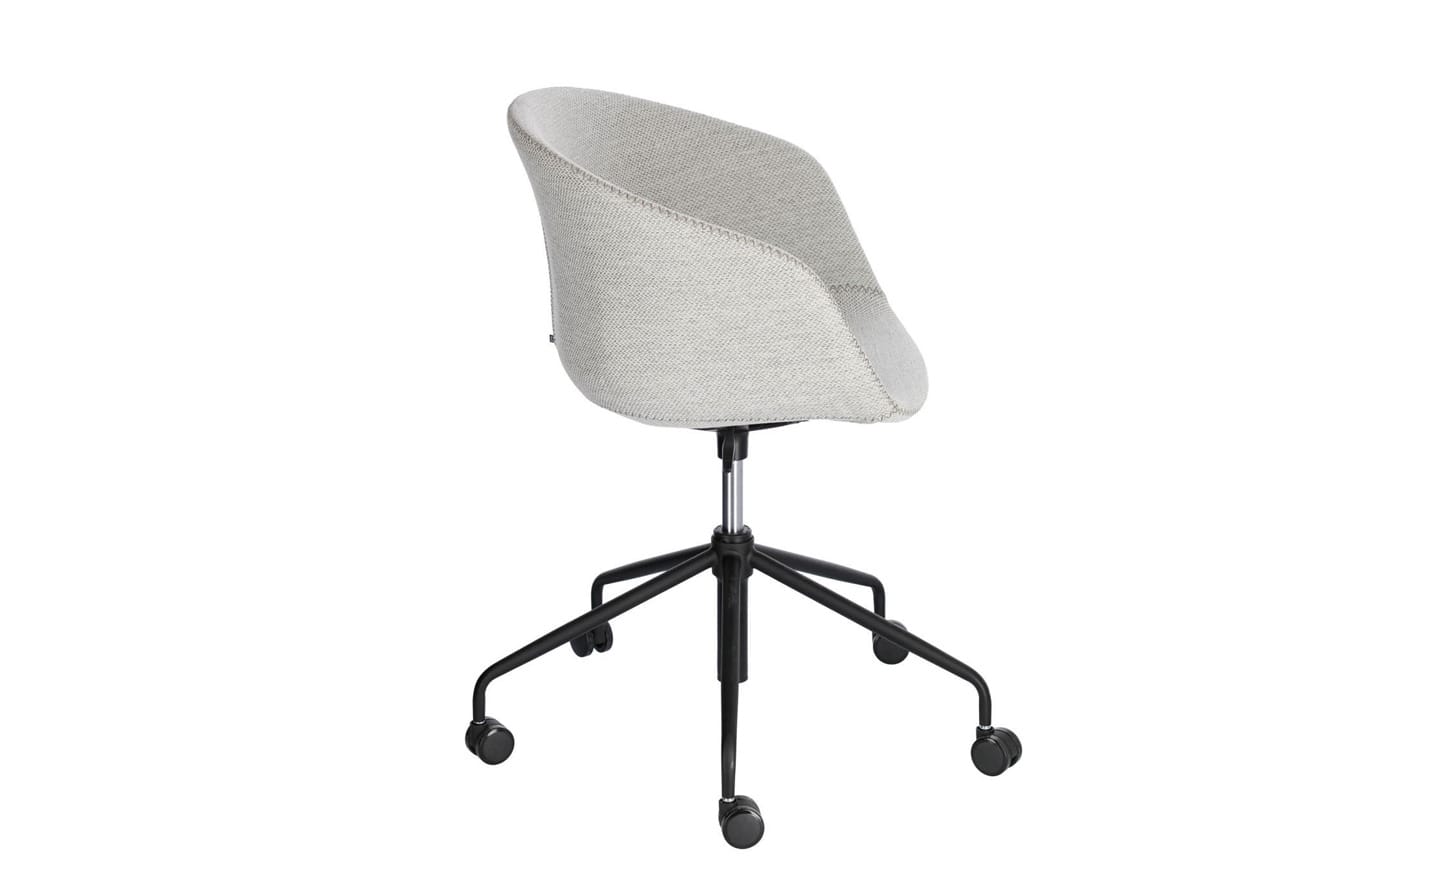 Cadeira de Escritório Yvette Cinza Claro - CC5171VD14. Design elegante com tecido antimanchas e ajustes de altura. Perfeita para adicionar estilo e conforto ao seu escritório. Moveistore